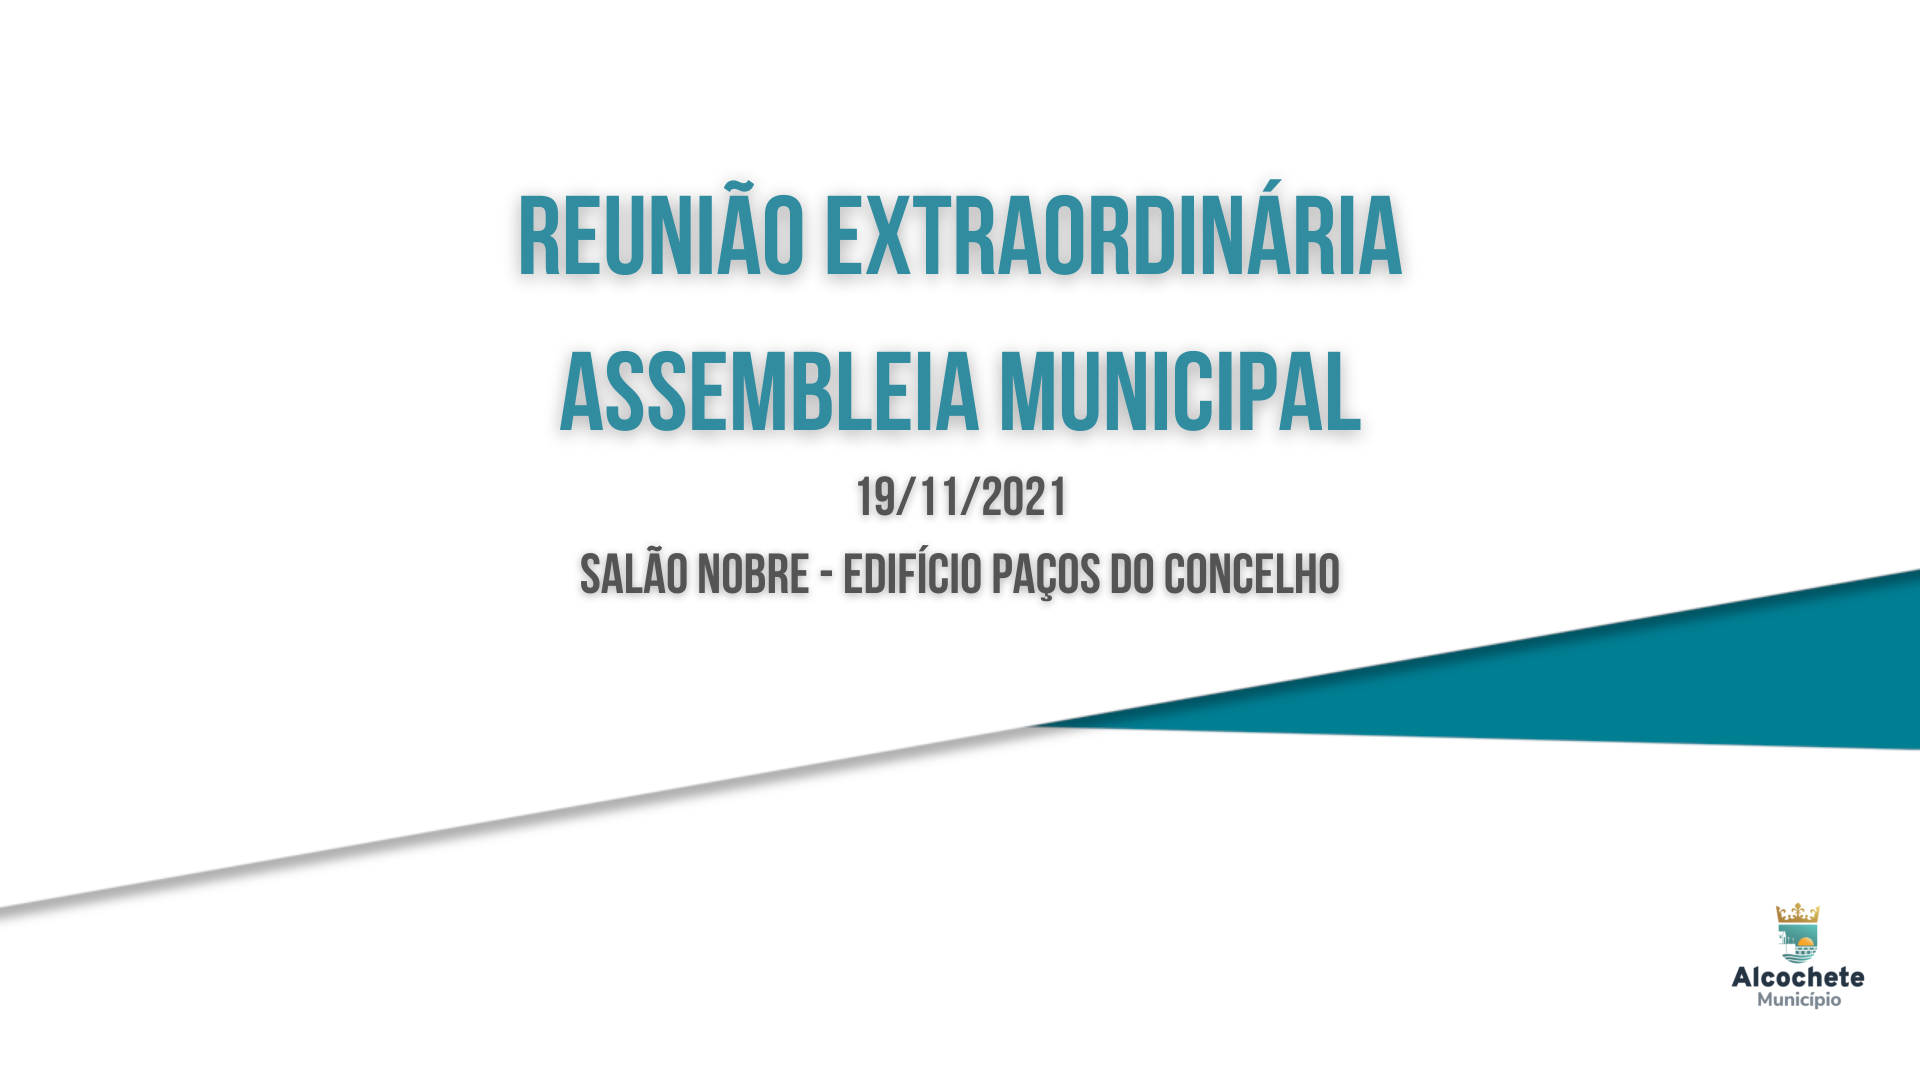 Assembleia Municipal reúne no dia 19 de novembro